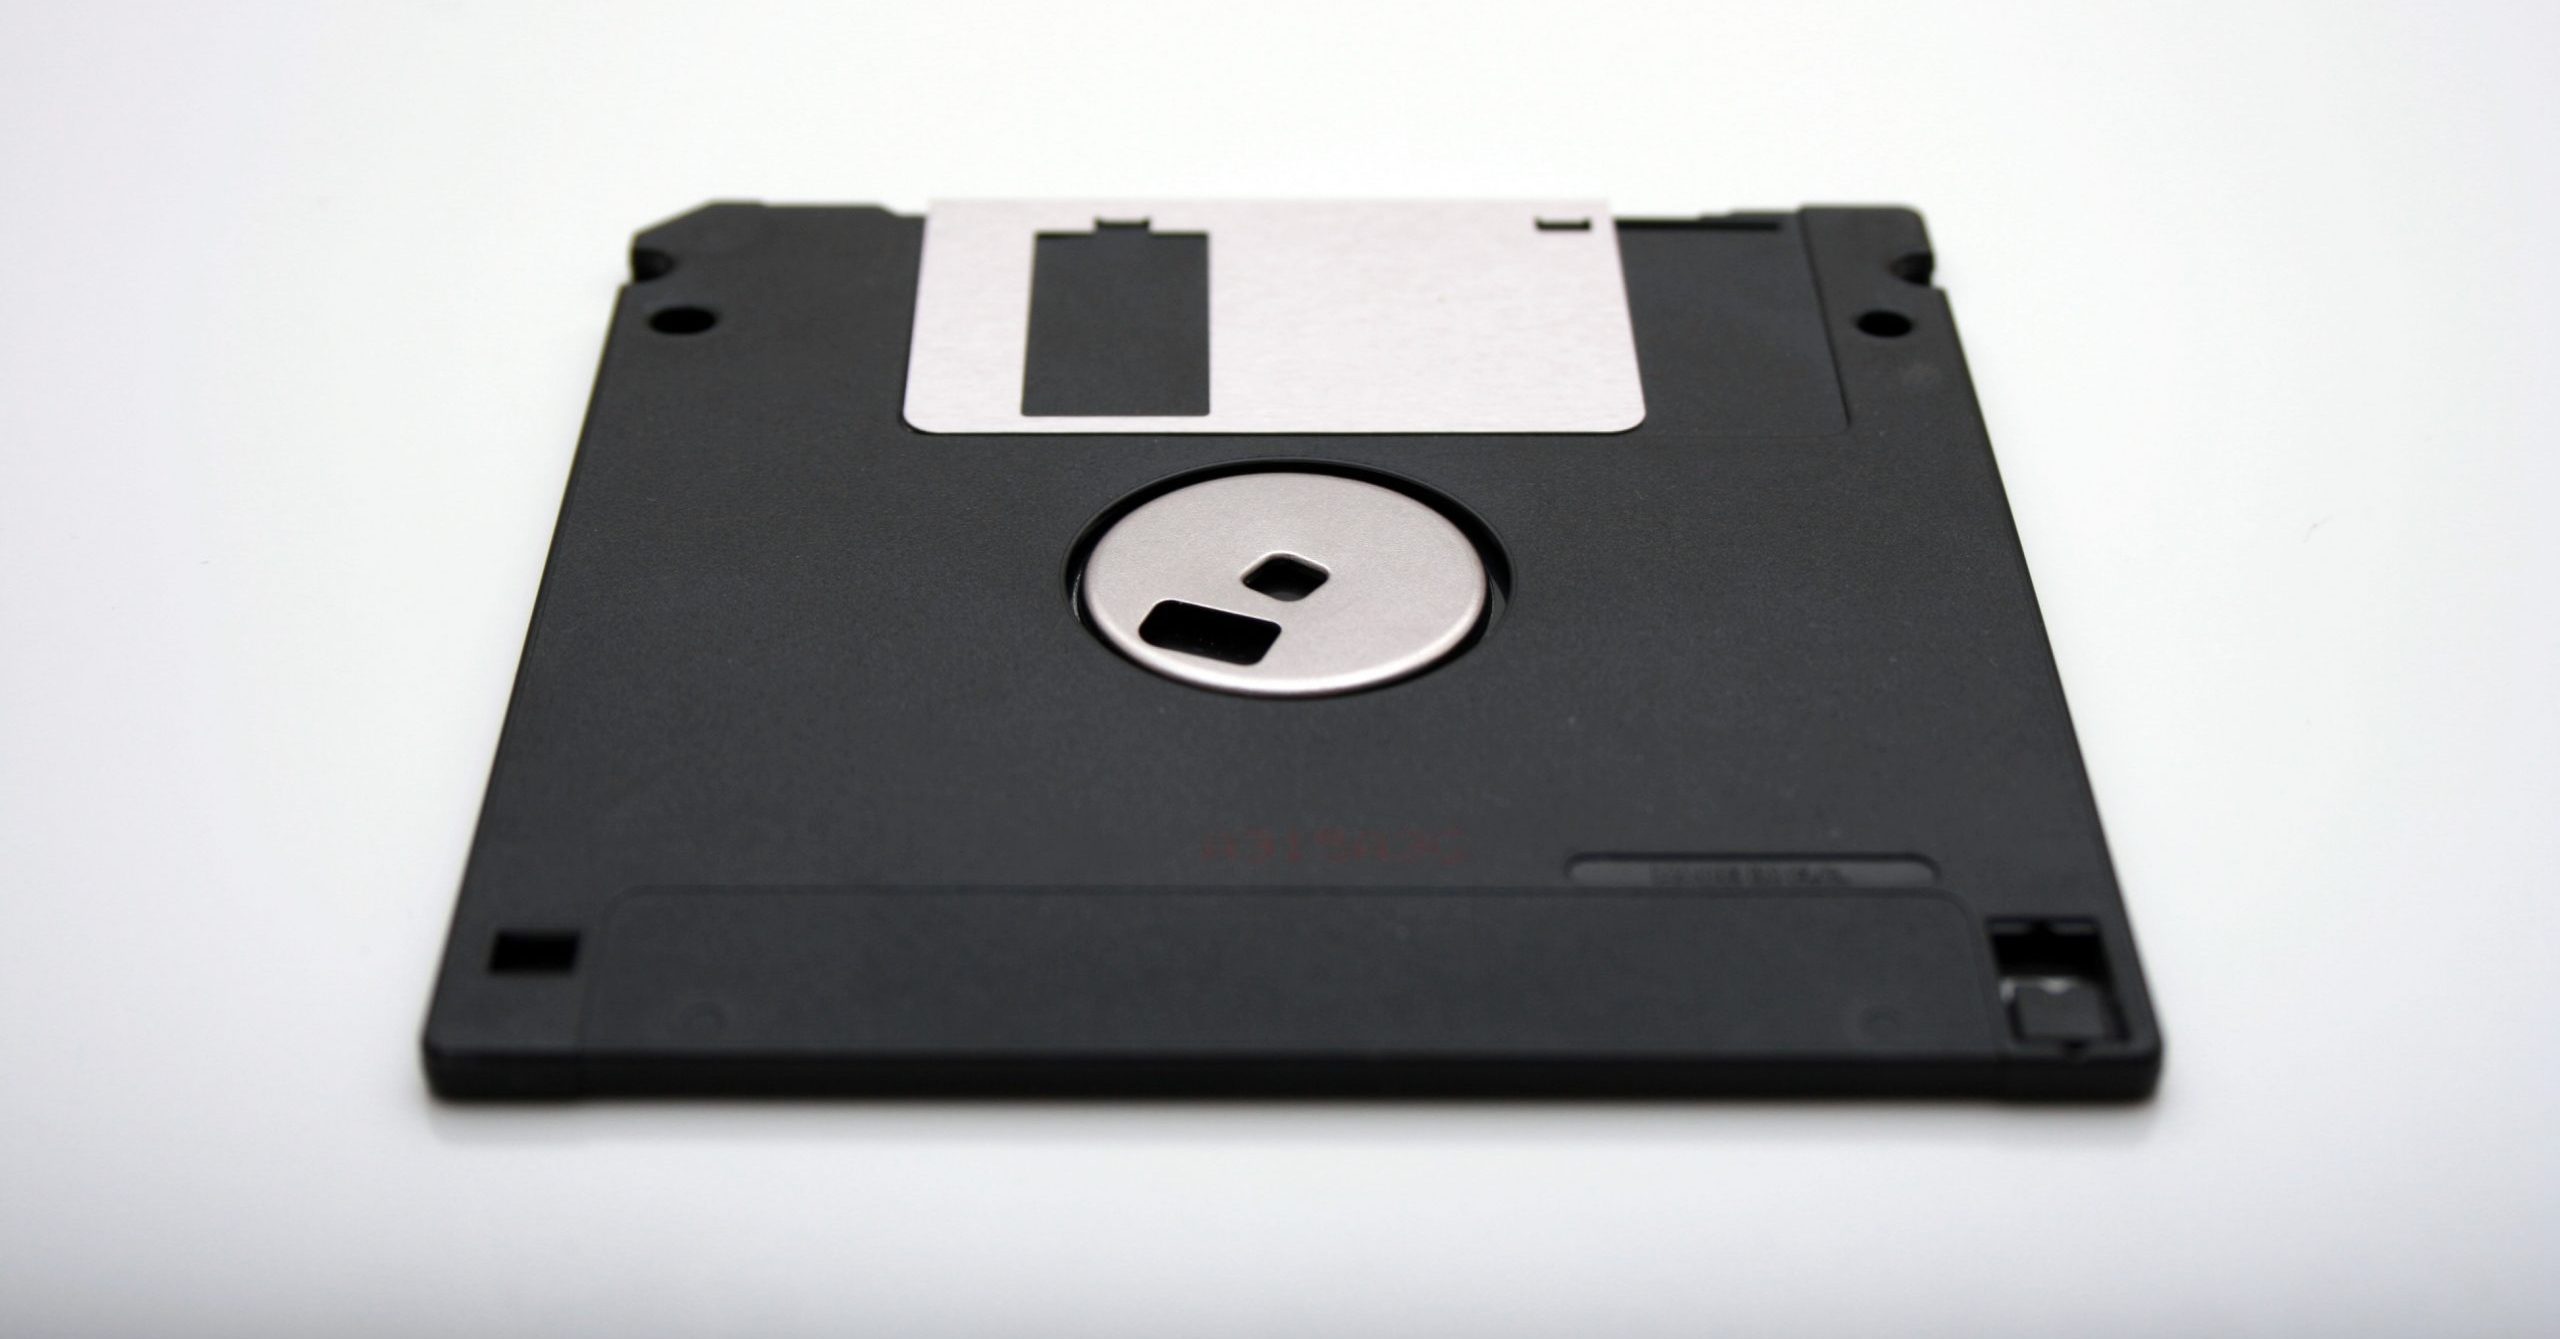 Gizmodo: What’s Hidden on Gene Roddenberry’s Secret Floppy Disks?